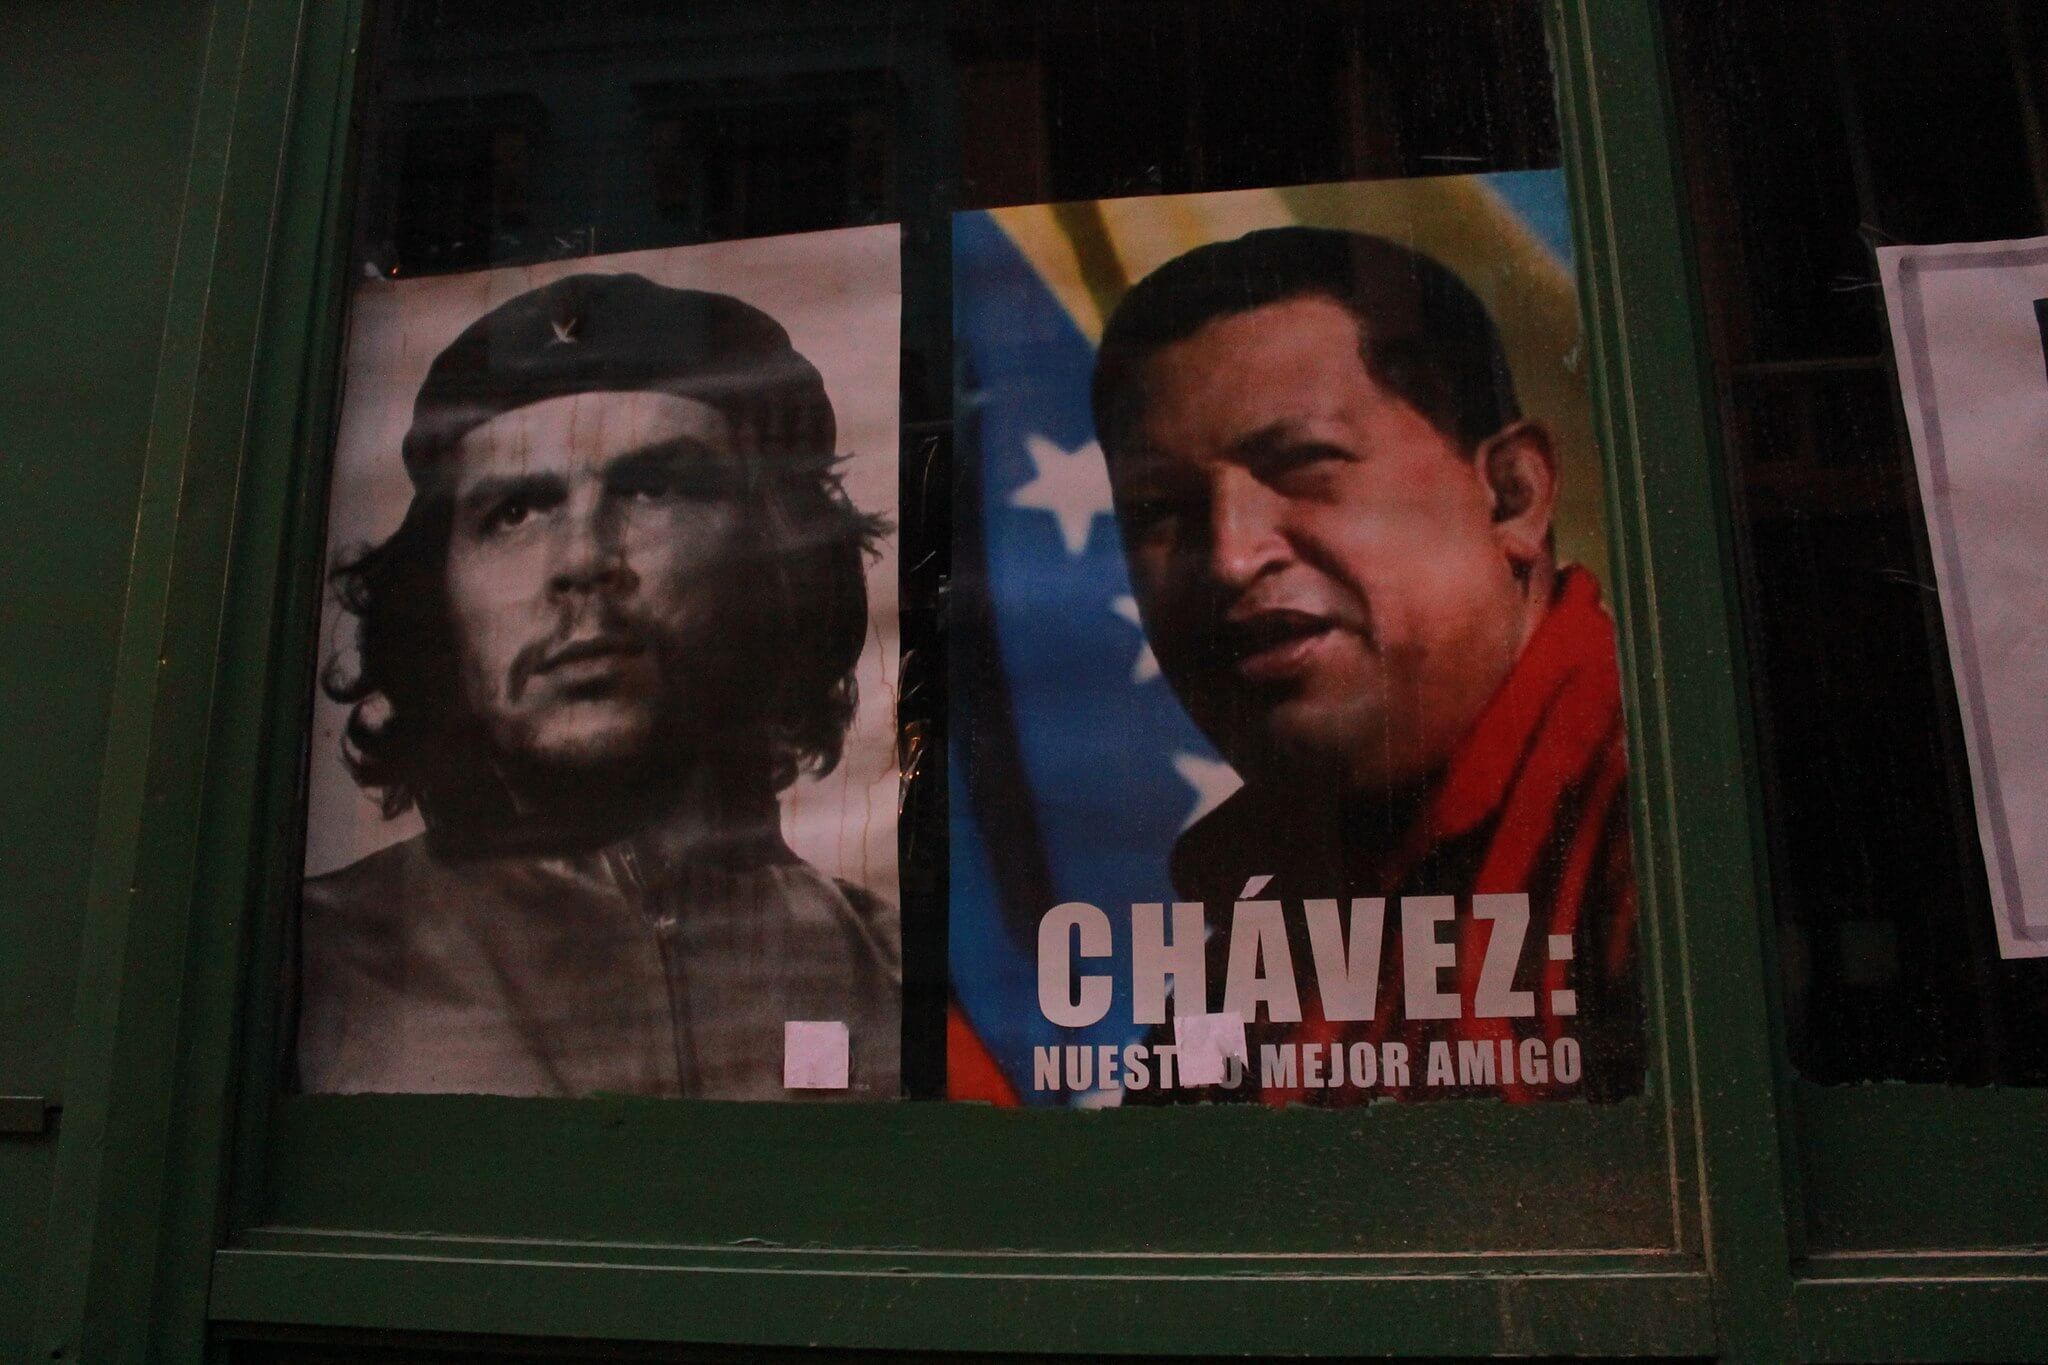 Homage aan Chavez en Guevara in de straten van Havana, Cuba 